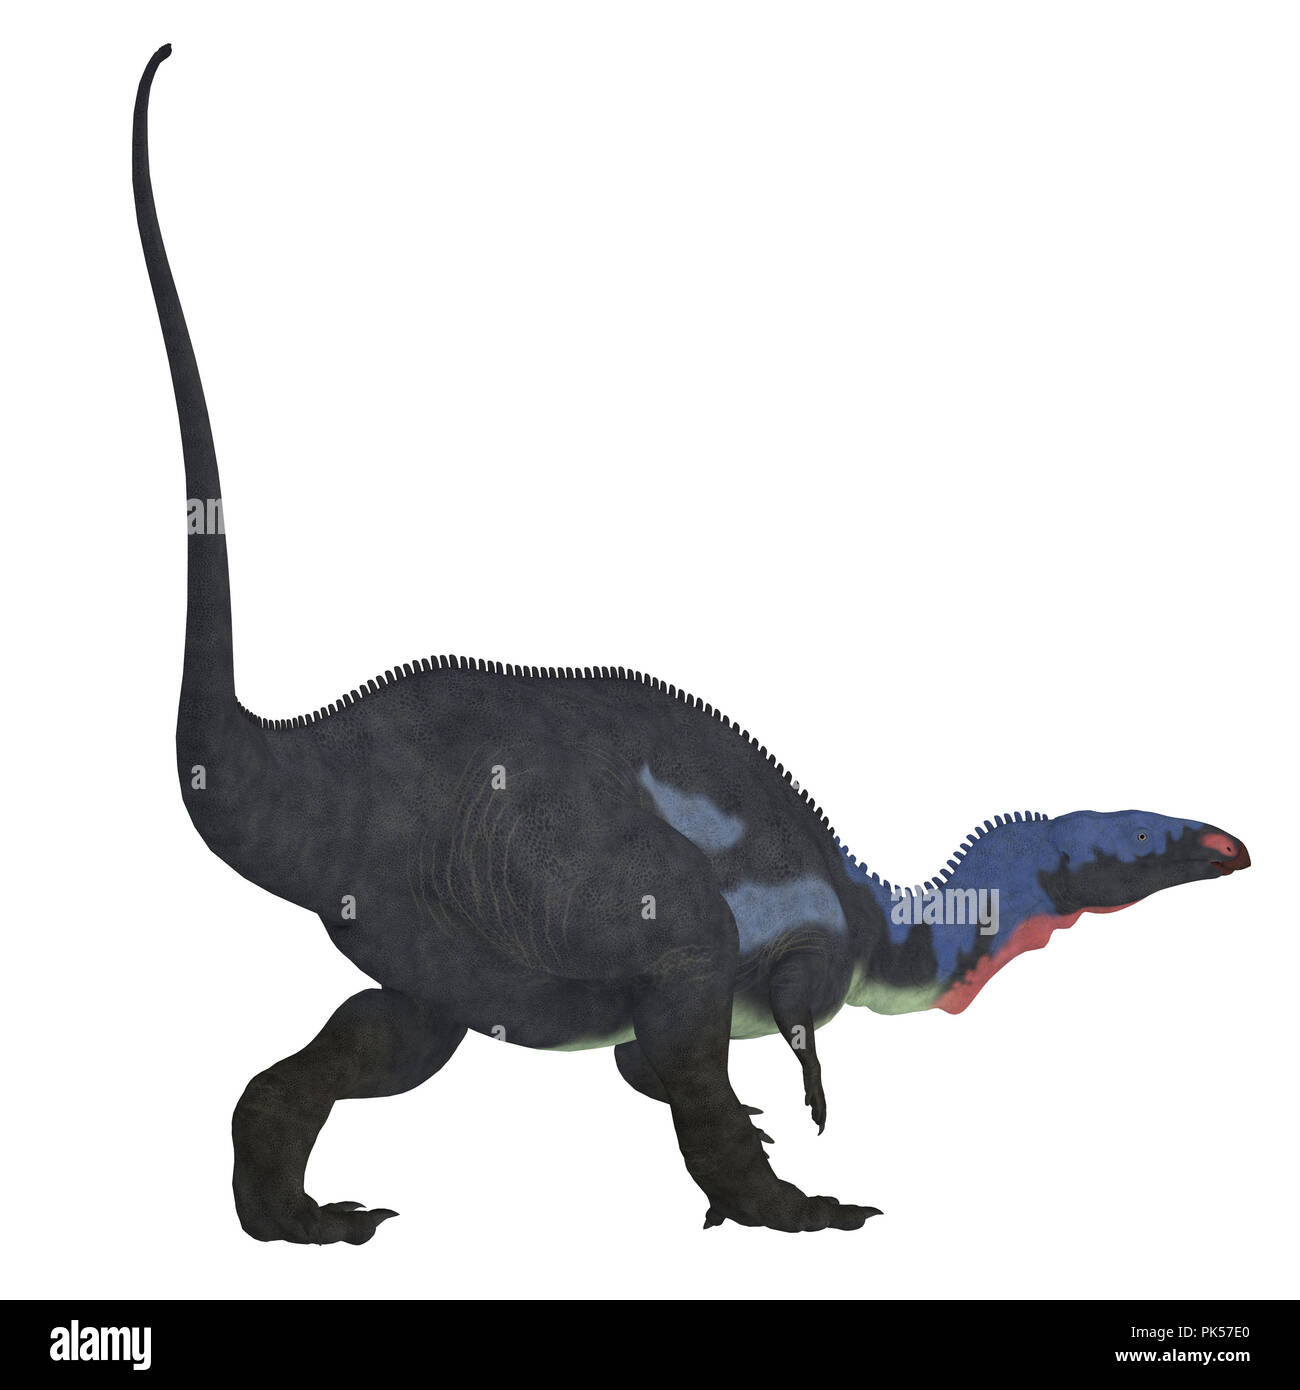 Camptosaurus dinosaure Camptosaurus - Queue était un dinosaure ornithischien herbivore qui vivait en Amérique du Nord pendant la période jurassique. Banque D'Images